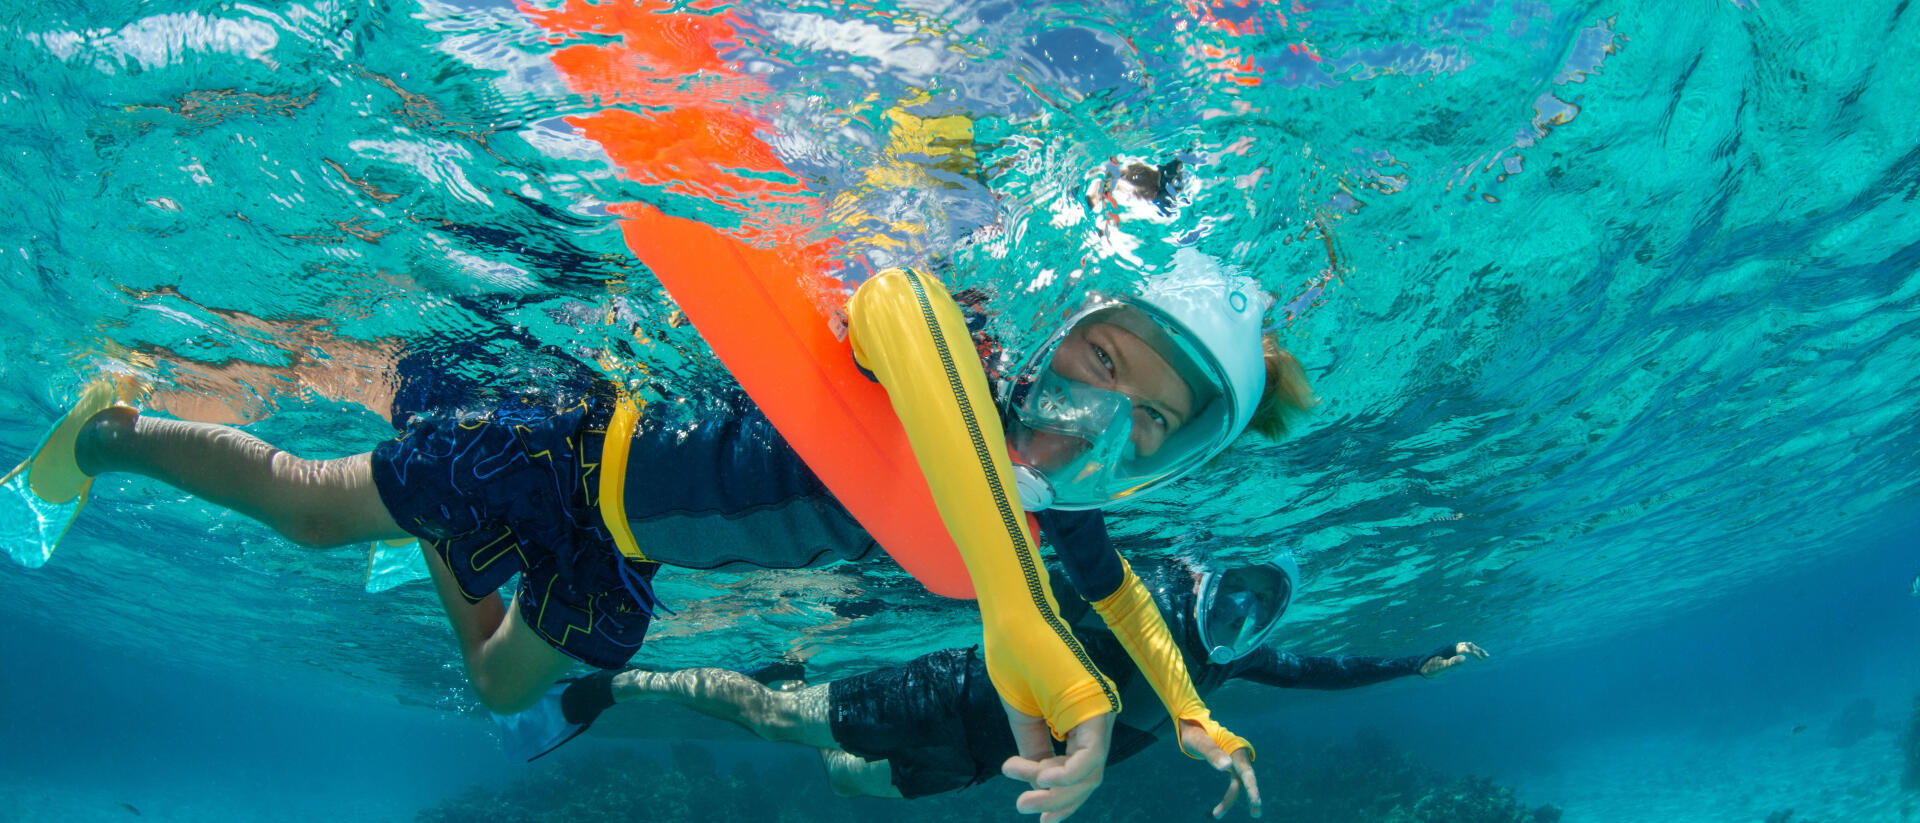 Un apport de flottabilité est-il utile en snorkeling ?